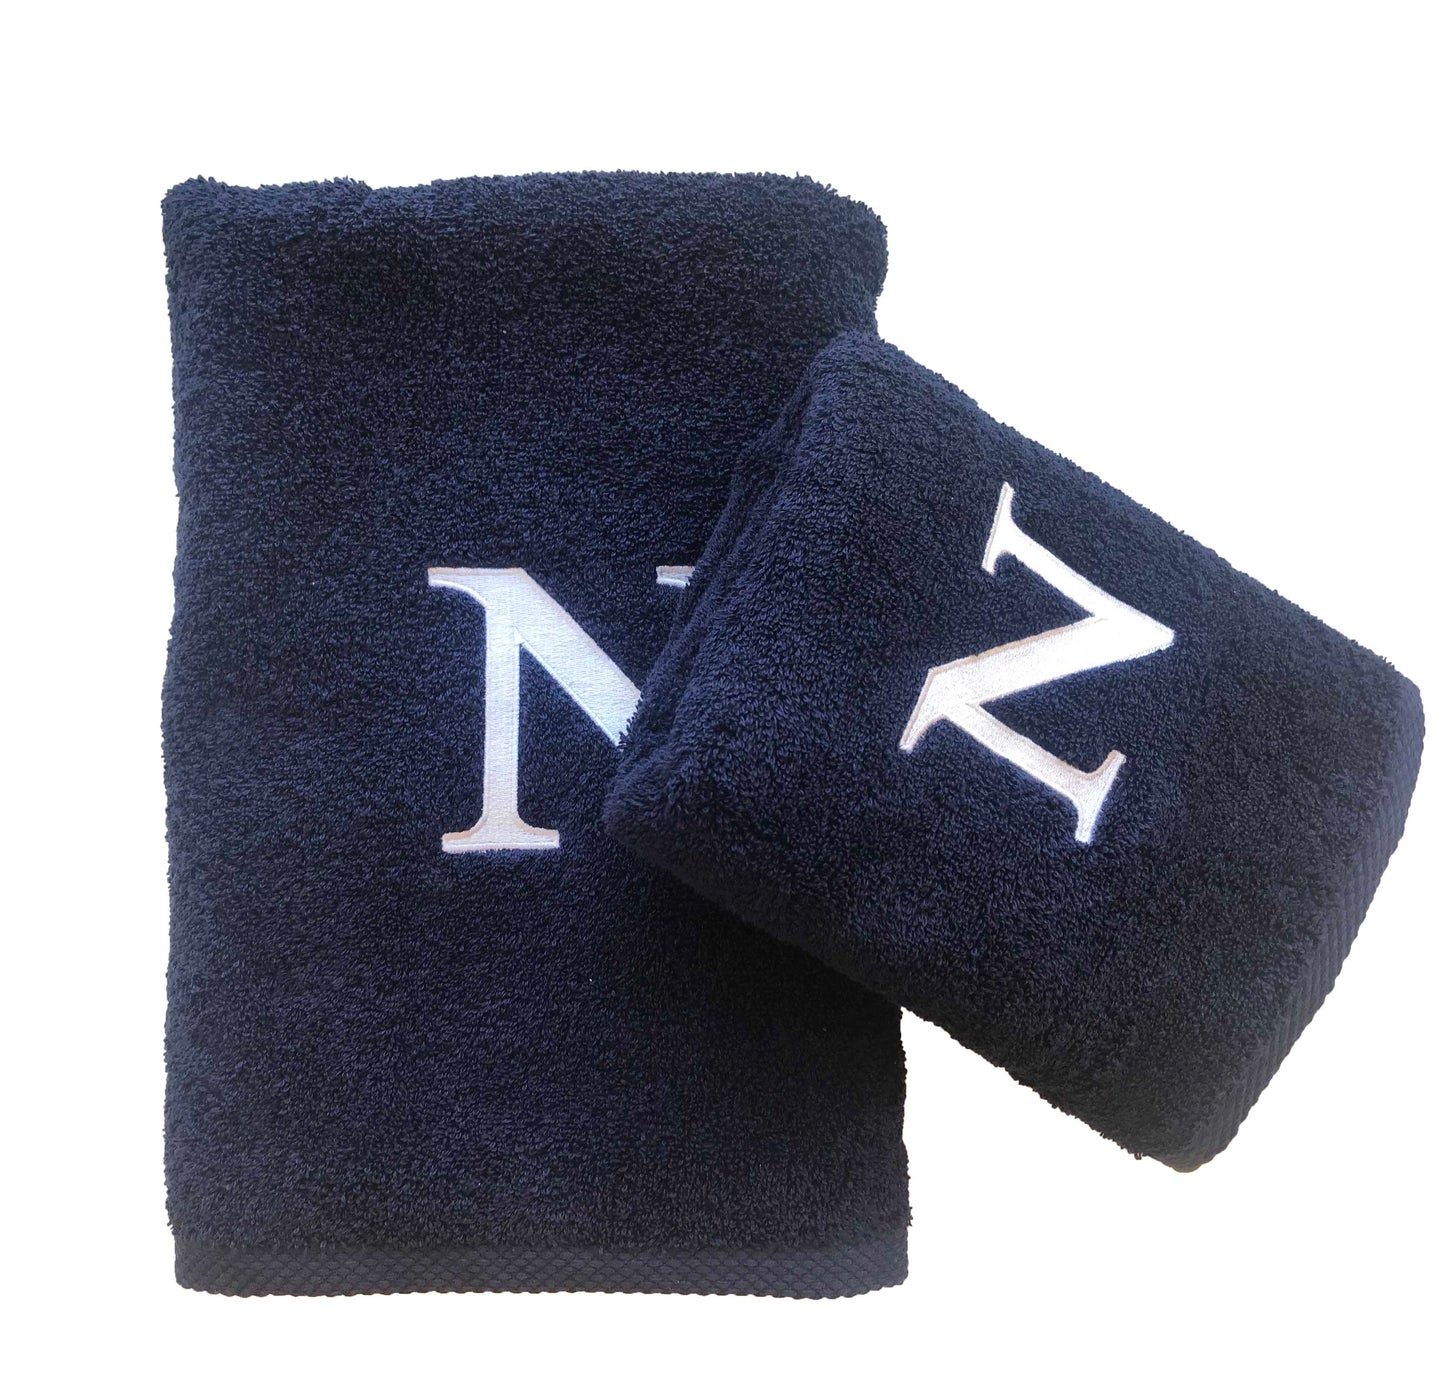 Premium Handtuch -  Mit edler Stickerei Buchstabe "N" - Vielseitig, Nachhaltig, Saugstark & Schnelltrocknend - 100% Baumwolle LMS-6642 Marinenblau